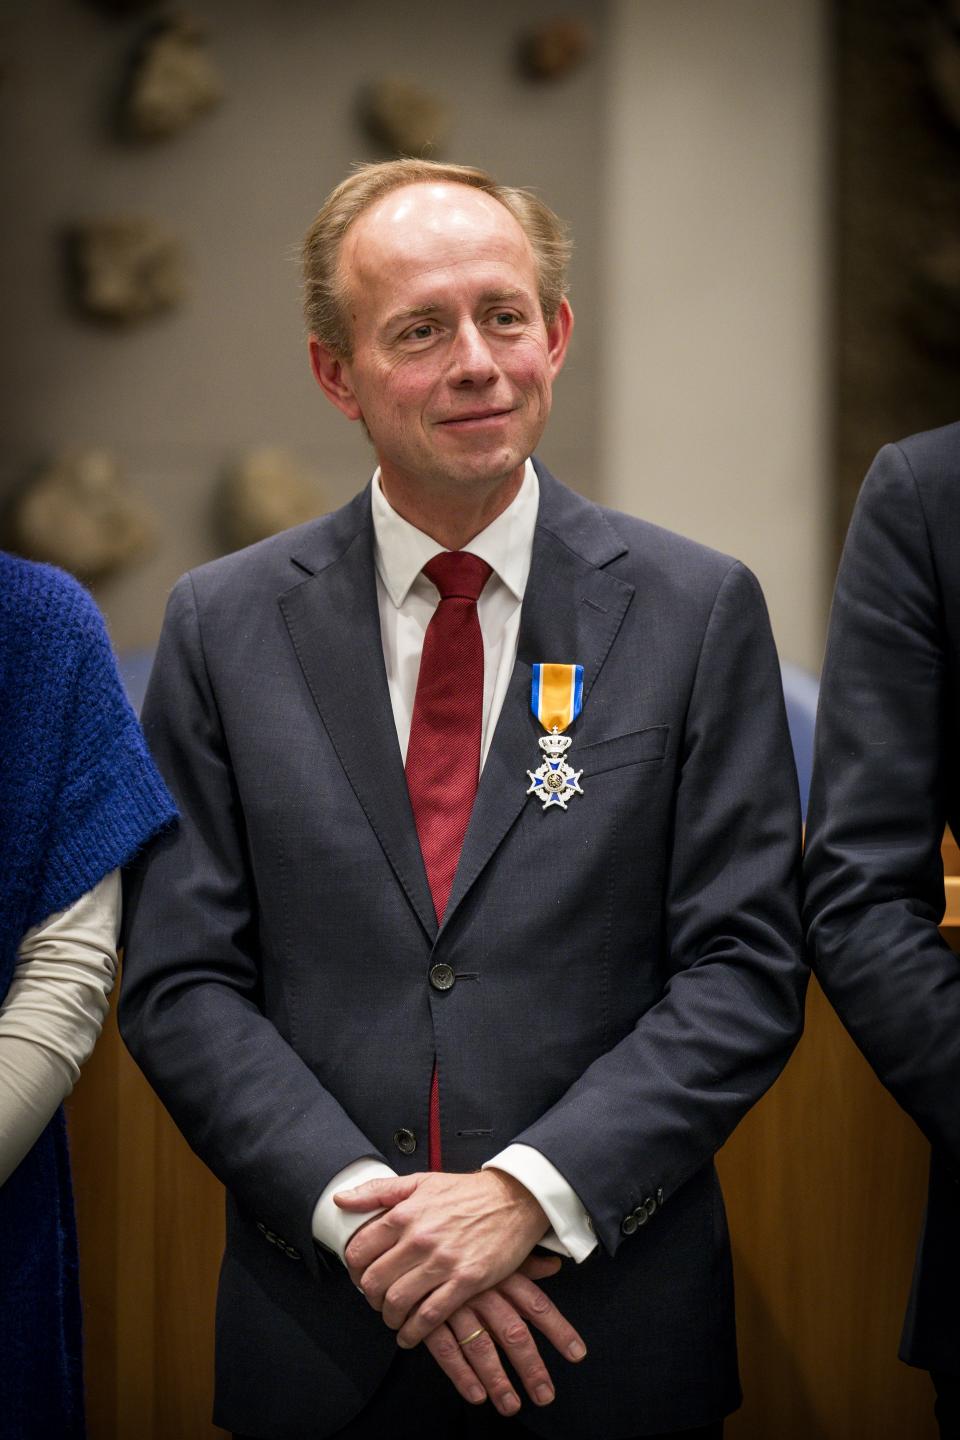 Kamerlid Kees van der Staaij met koninklijke onderscheiding opgespeld.